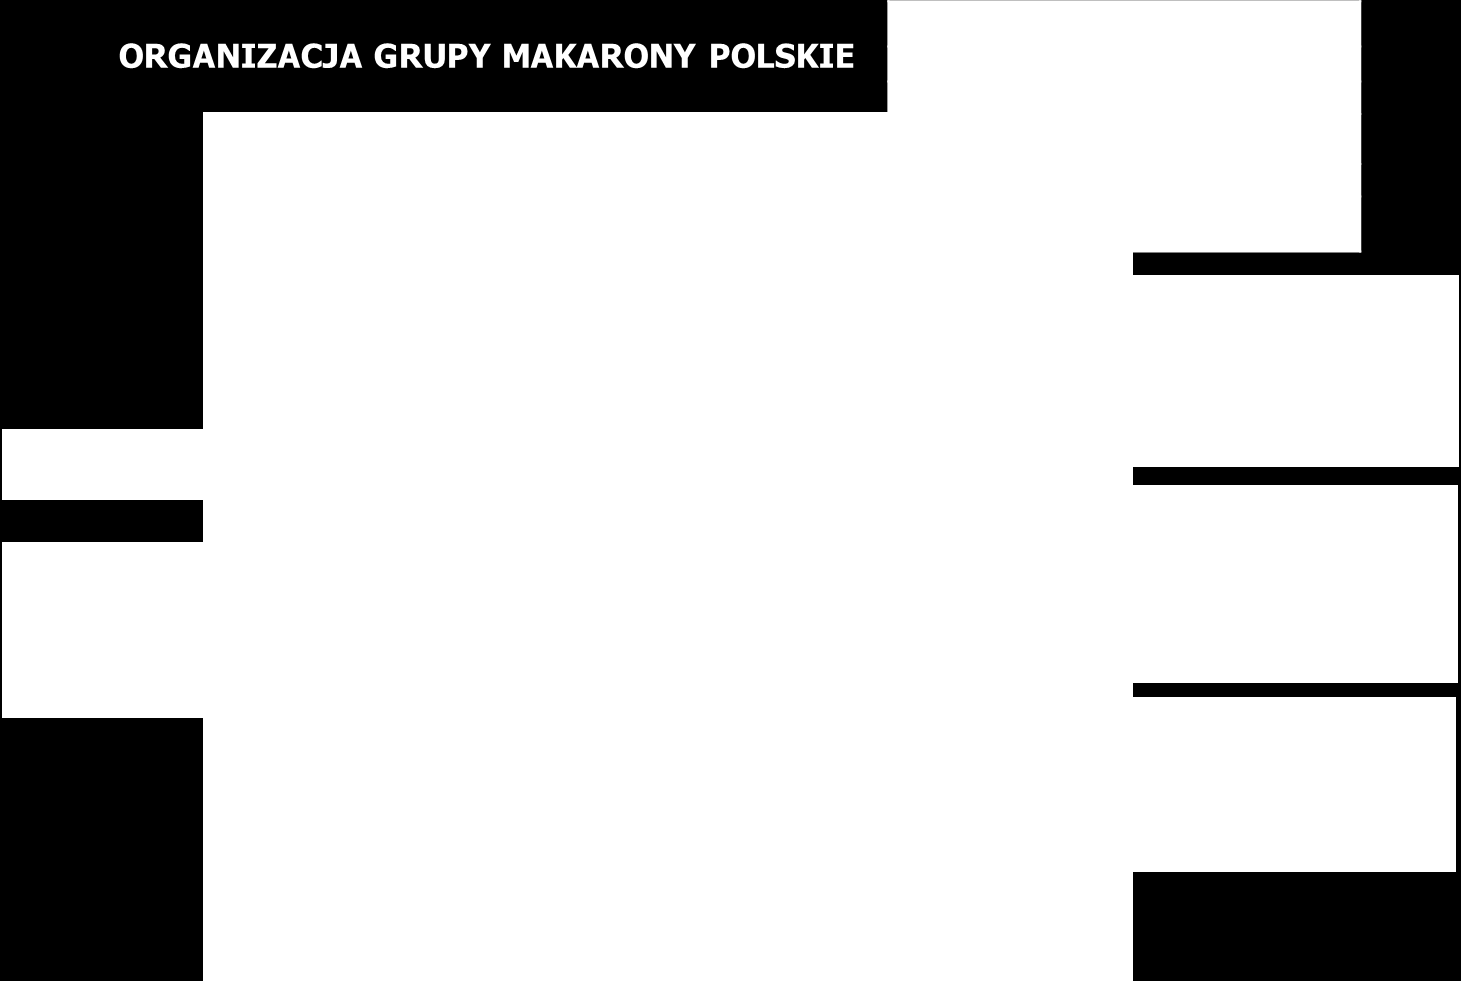 Str. 07 Informacje ogólne Dane organizacyjne Makarony Polskie SA Siedziba: 35-082 Rzeszów, ul.